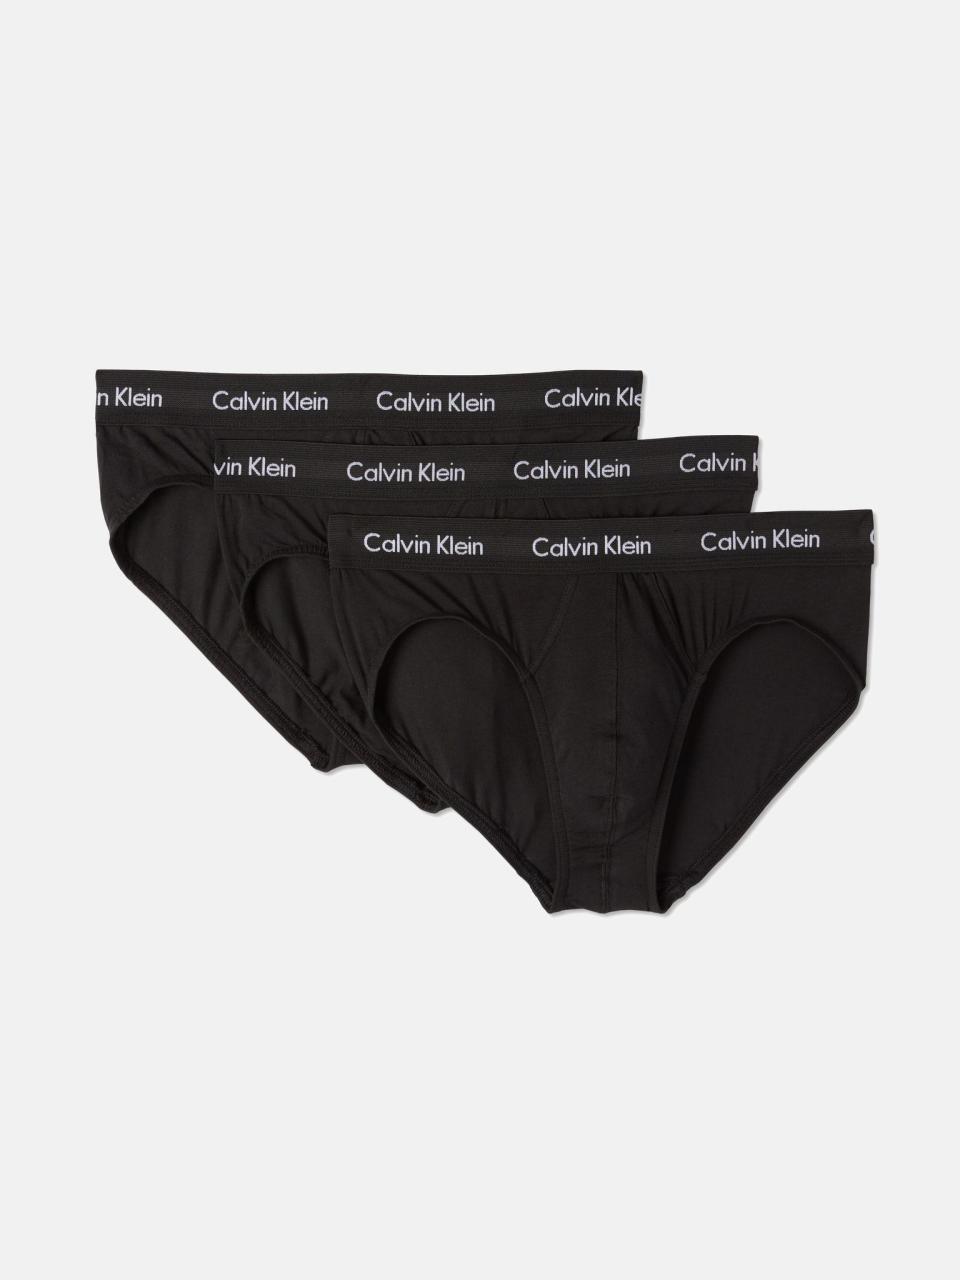 Calvin Klein Cotton Stretch Underwear 3-Pack